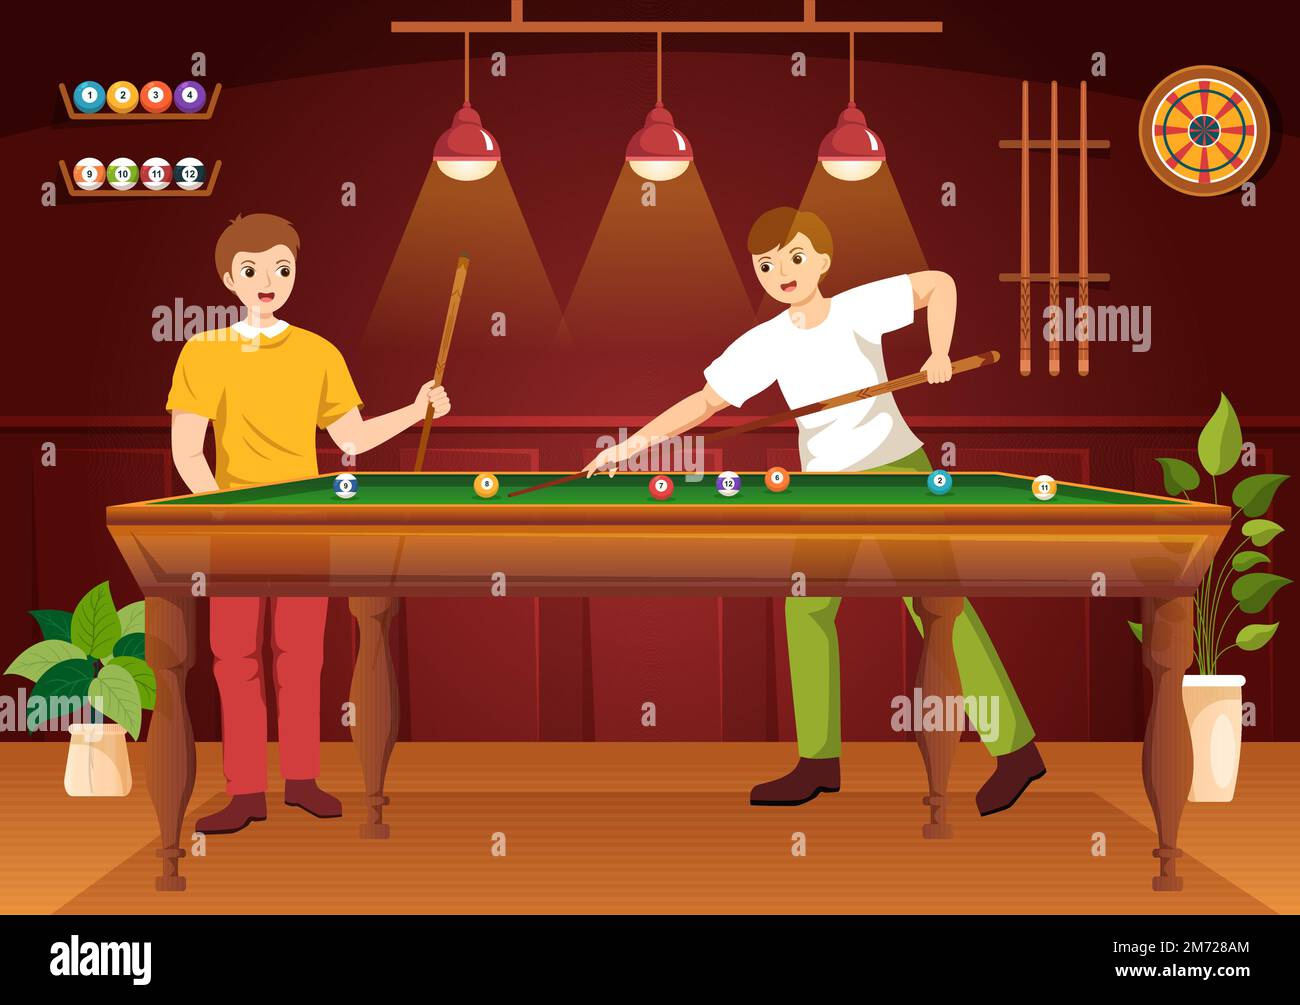 Illustrazione del gioco di Biliardo con stanza della piscina del giocatore  con bastone, tabella e sfere di Biliardo nel randello di sport in modelli  disegnati a mano del cartoon piatto Immagine e